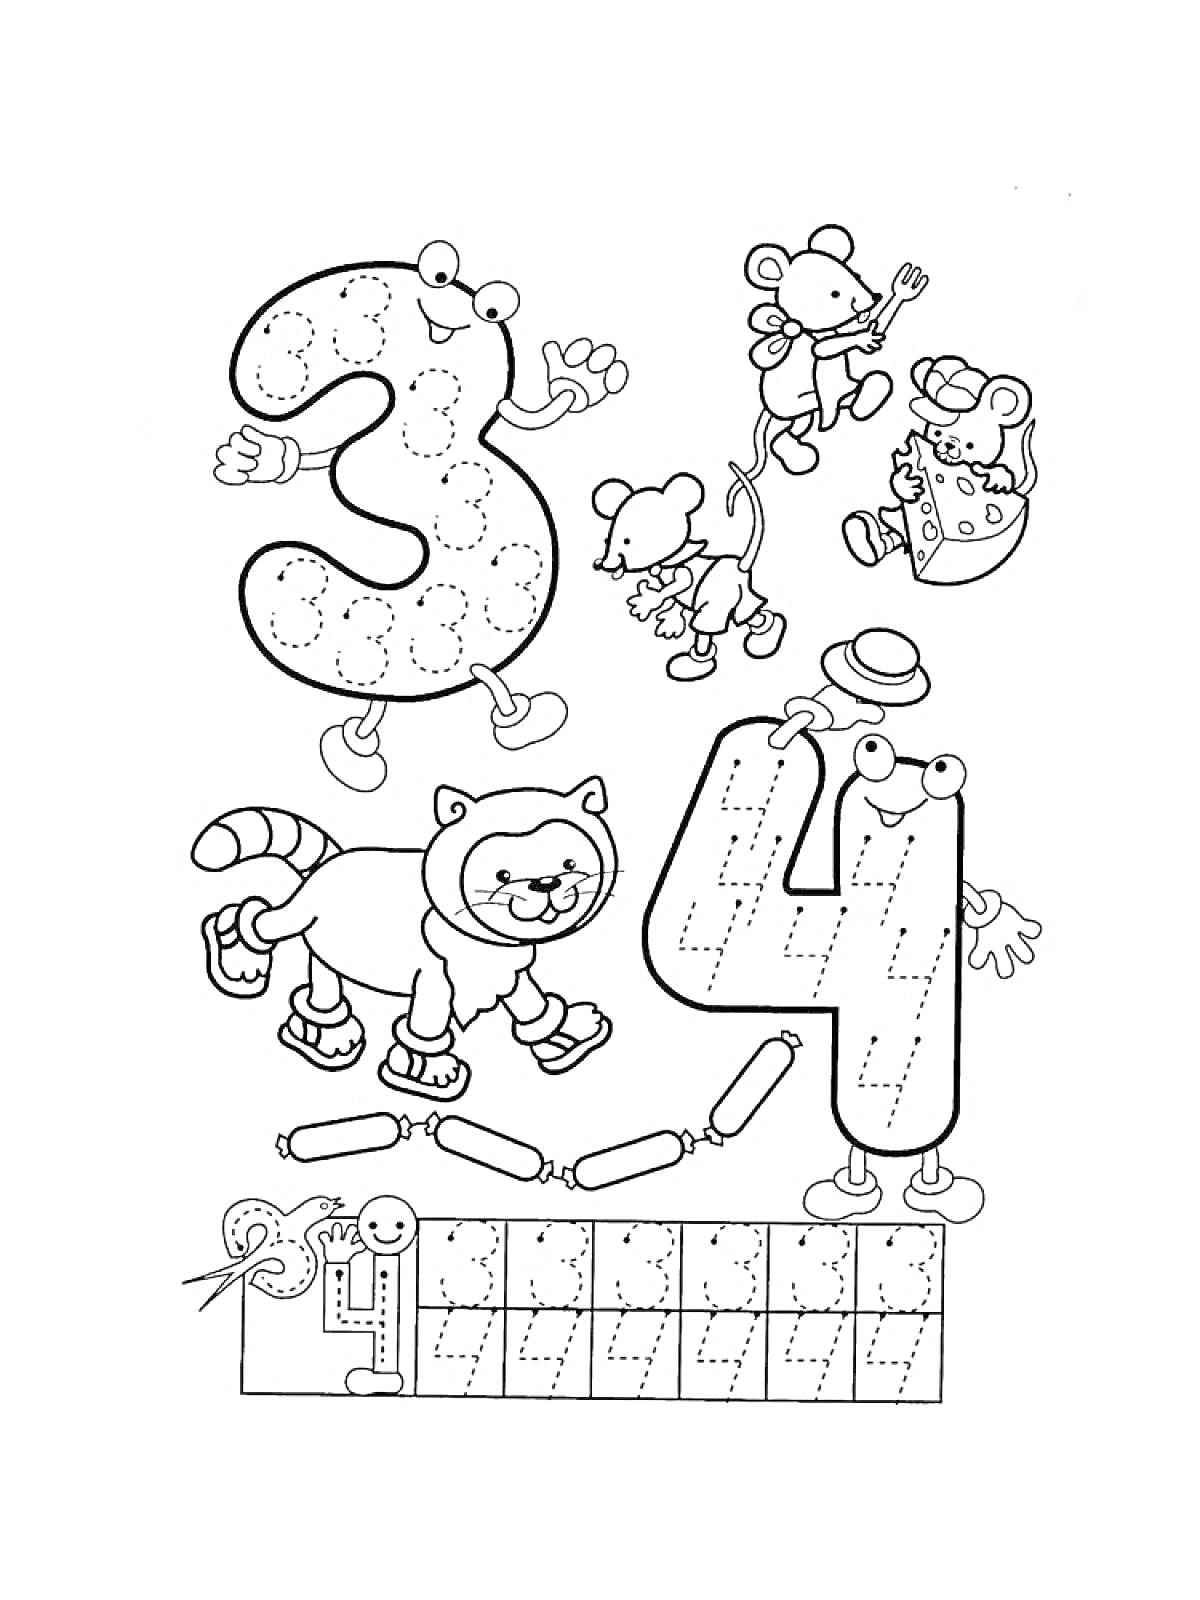 Раскраска Прописи цифр 3 и 4 с мышами, котом на роликовых коньках, линейкой и карандашами